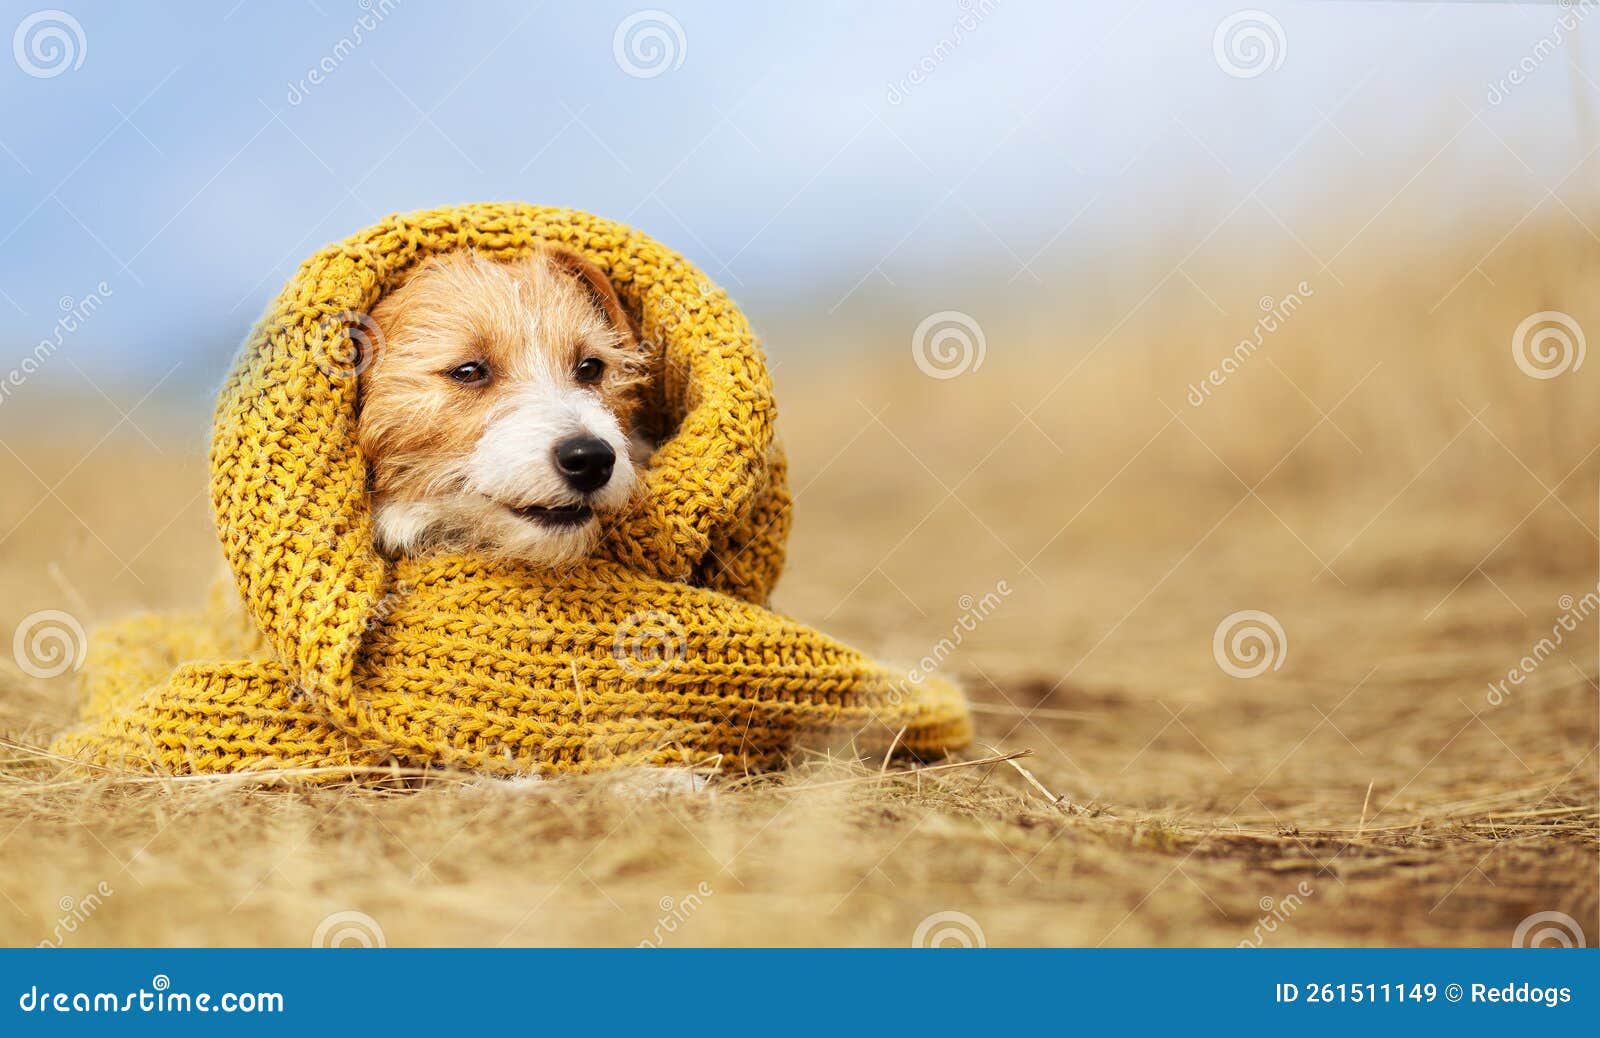 ejemplo bordillo seta Adorable Cachorro De Perro De Mascota Feliz Con Ropa De Invierno De Otoño  Imagen de archivo - Imagen de suéter, perrito: 261511149